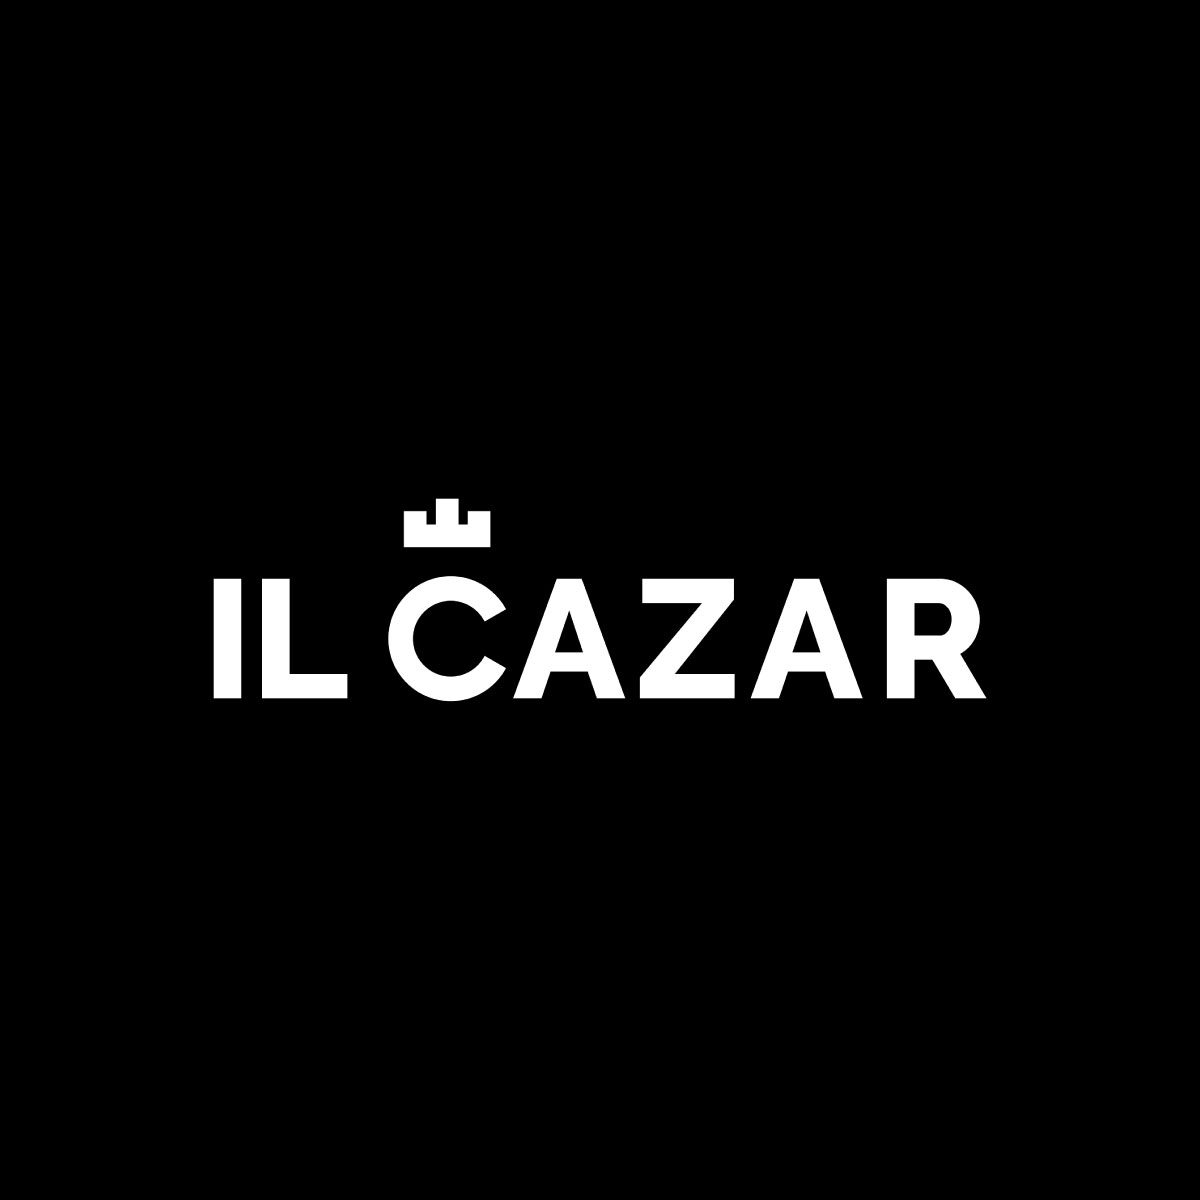 Developer: IL CAZAR